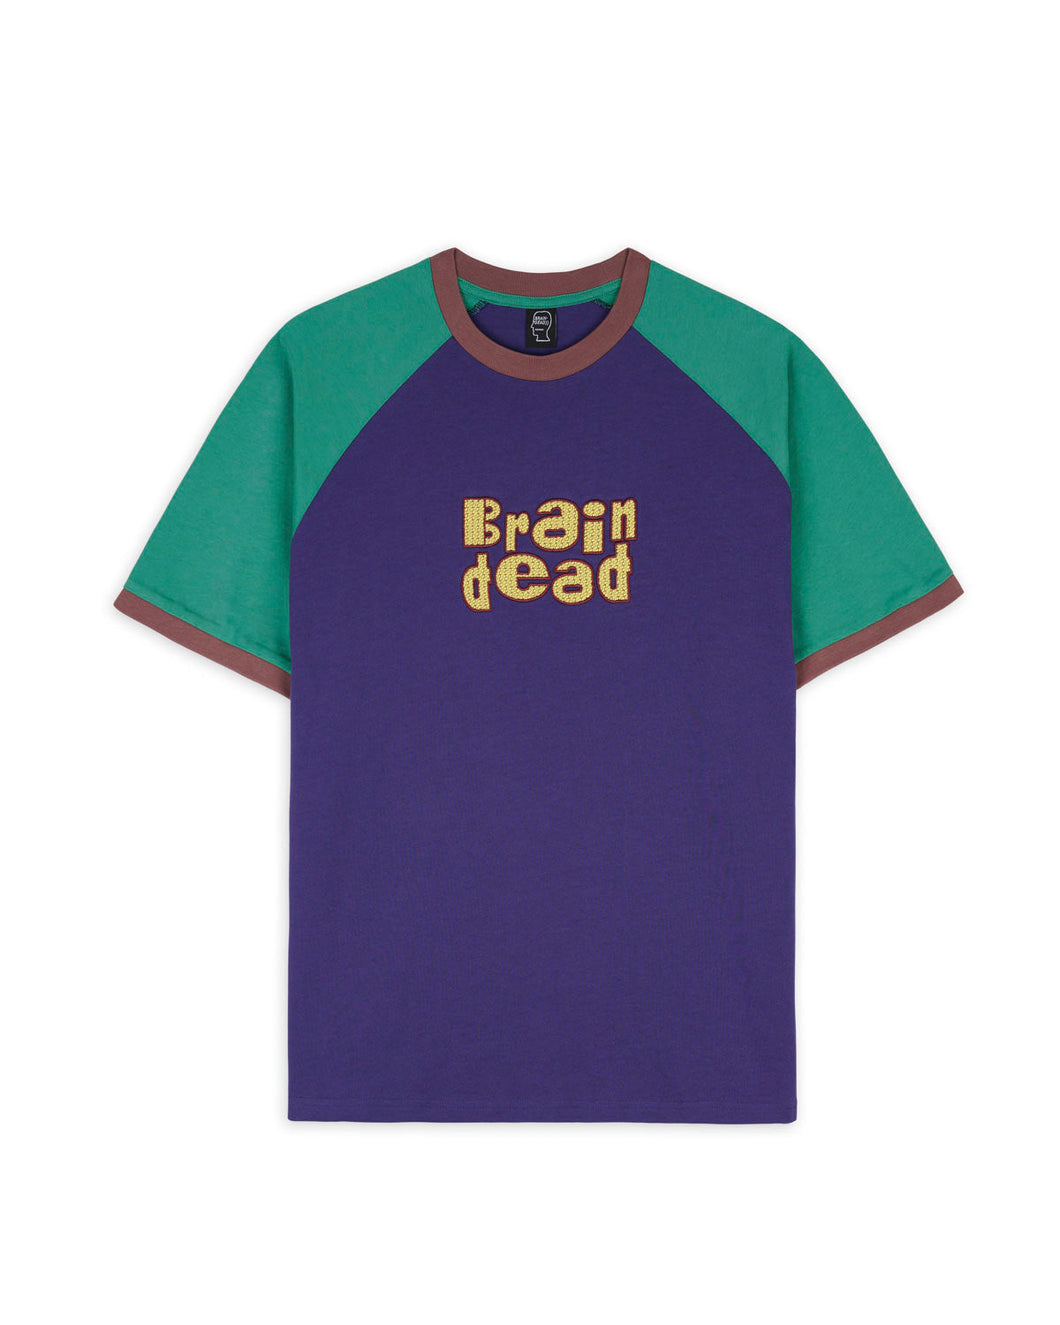 Brain Dead Field Raglant T-Shirt Size Small